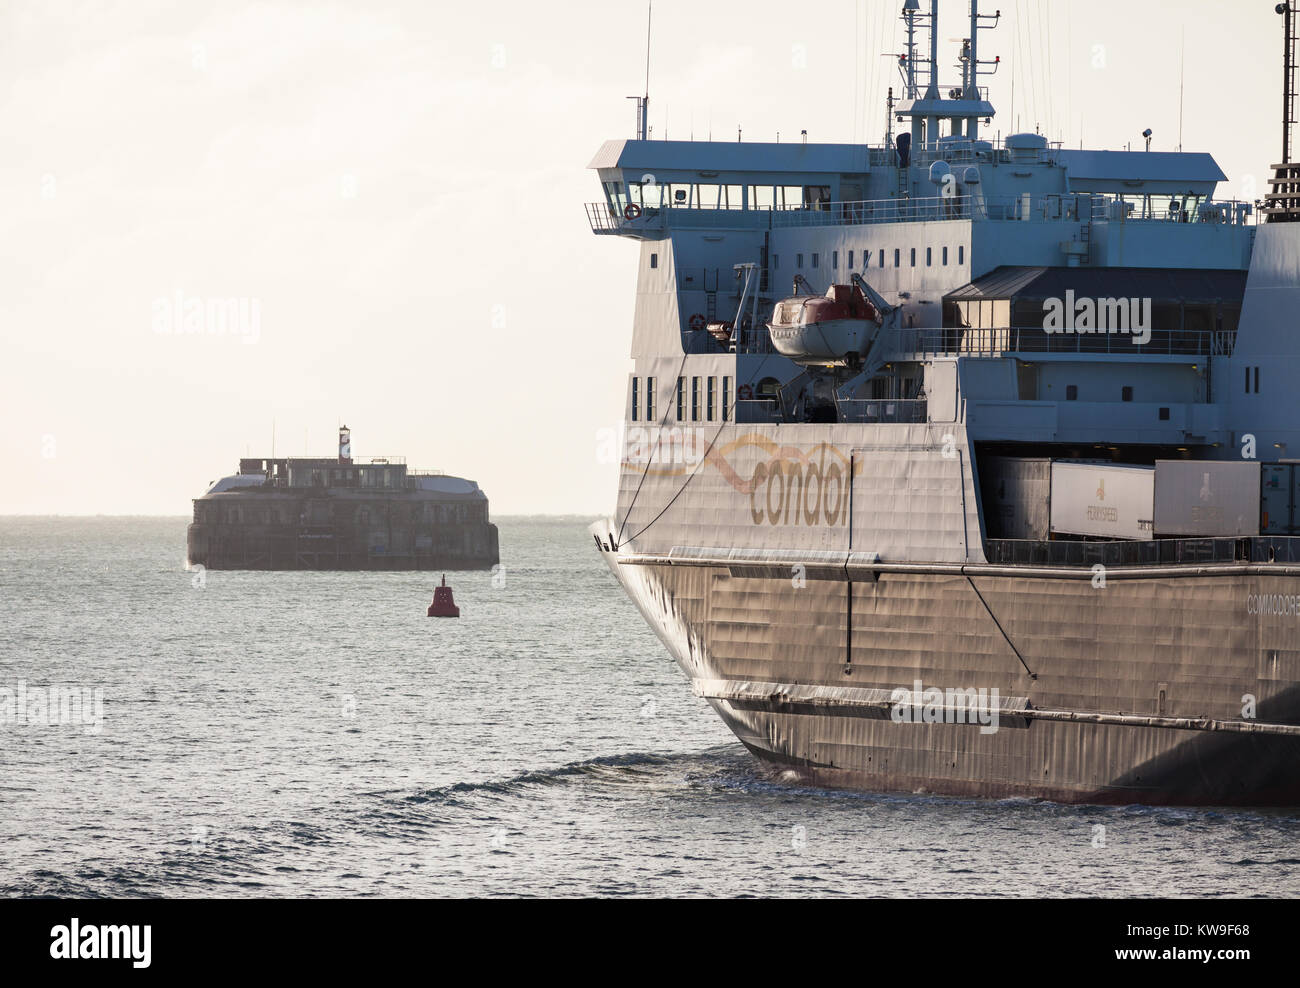 Le channel island ferry, le Commodore Clipper, au départ de Portsmouth Harbour Banque D'Images